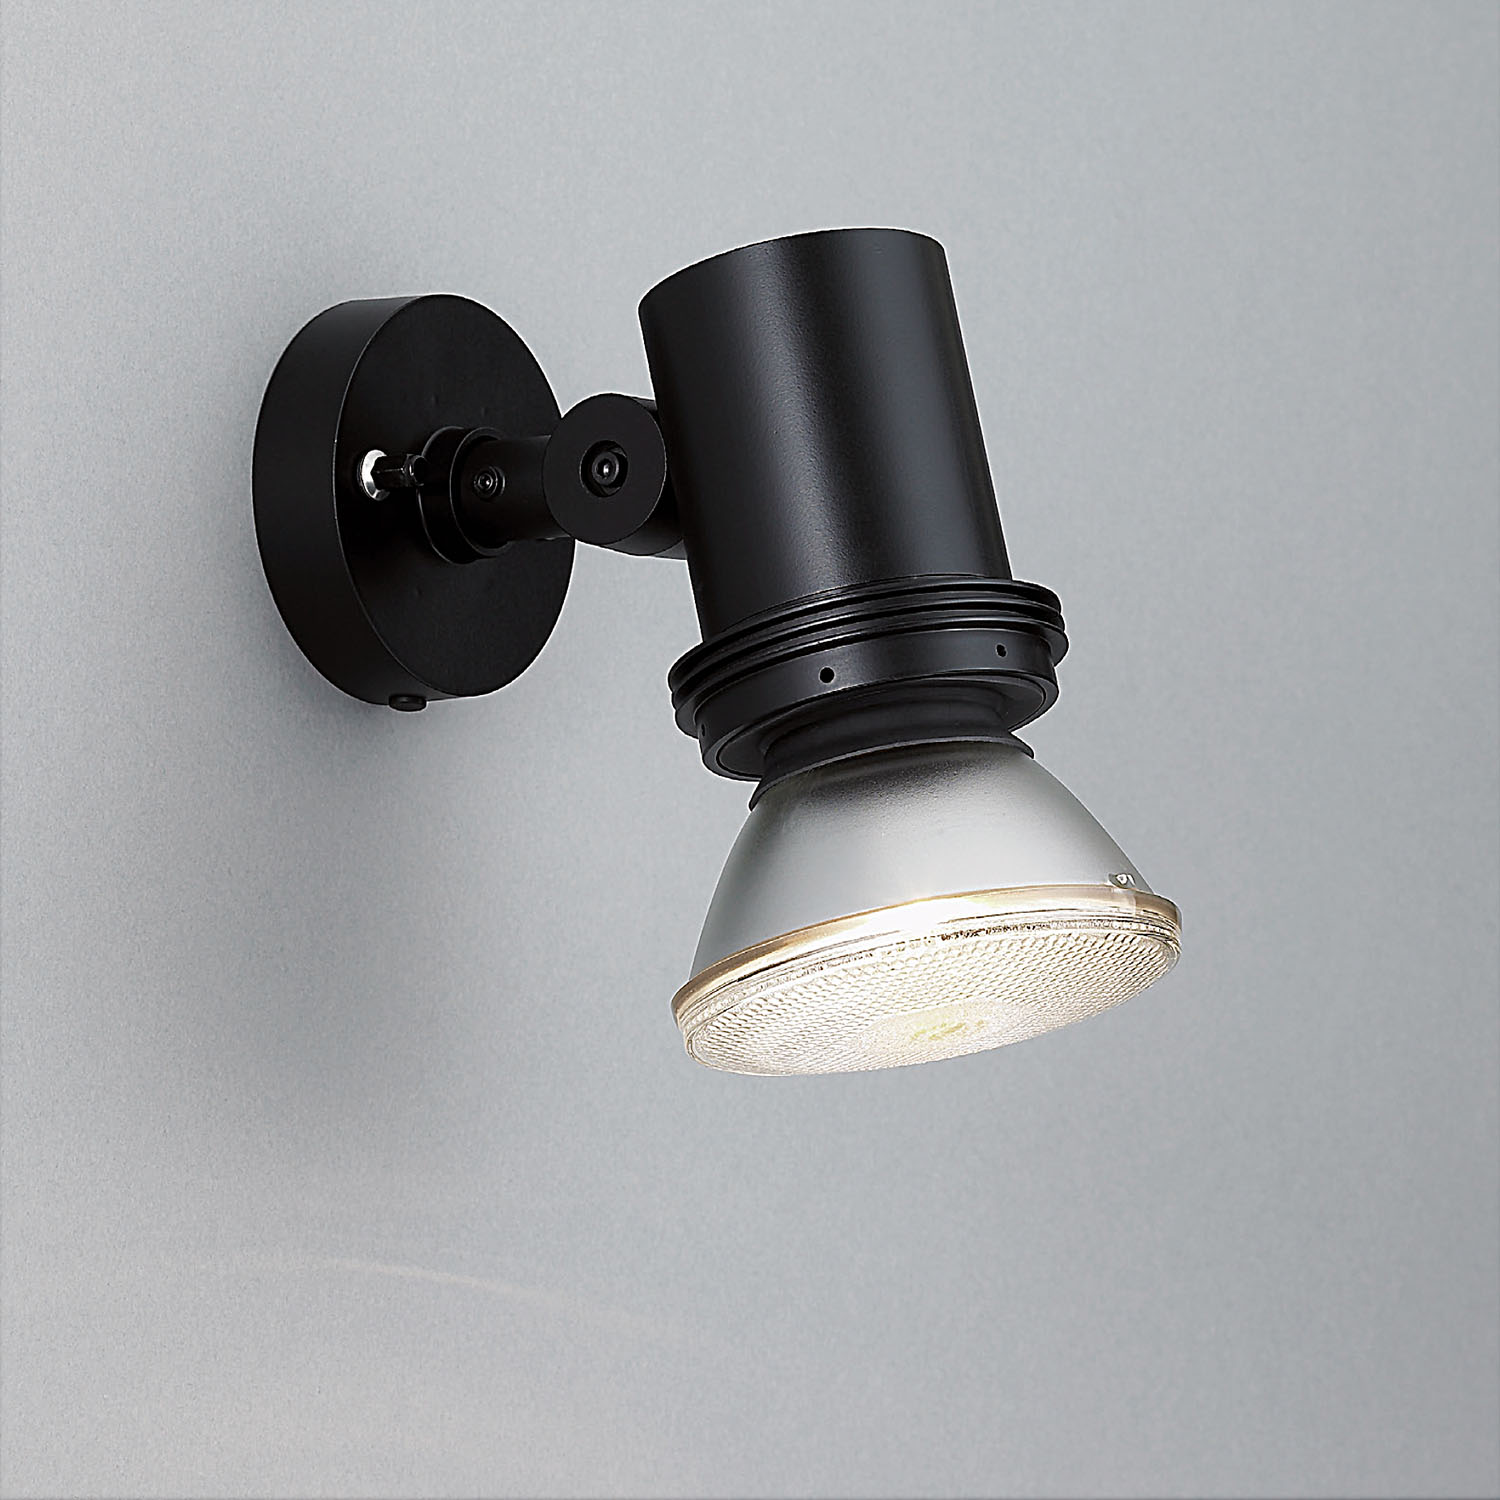 山田照明 Compact Spot Neo（コンパクト・スポット・ネオ） 屋外用スポットライト 黒色 LED（昼白色） 36度 AD-3144-N - 3